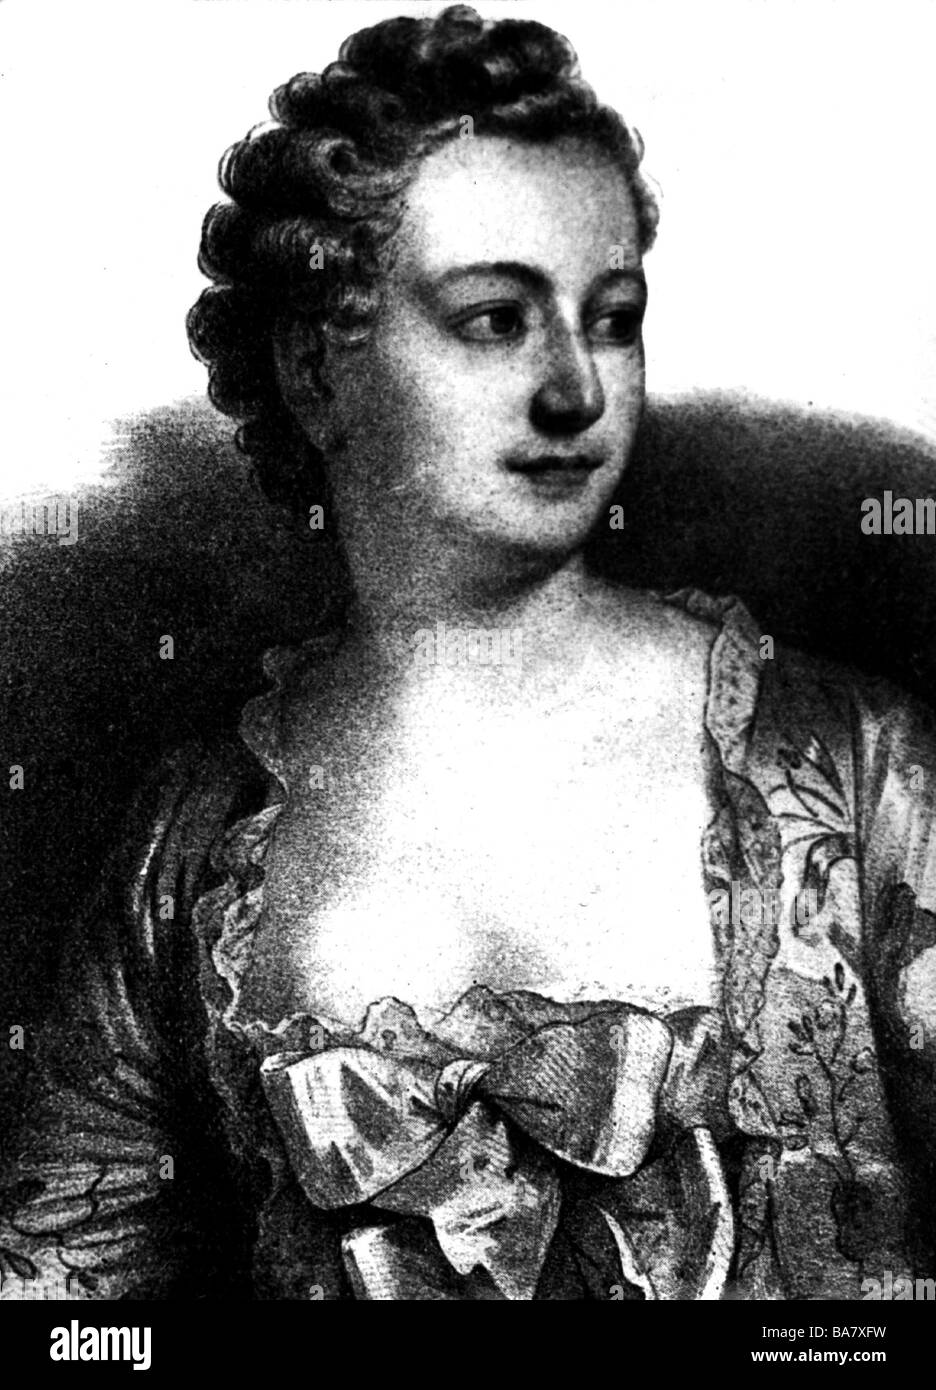 Pompadour, Jeanne Antoinette Poisson Marquise de, 29.12. 1721 - 15.4.1764, portrait, lithograph after contemporary image, Stock Photo